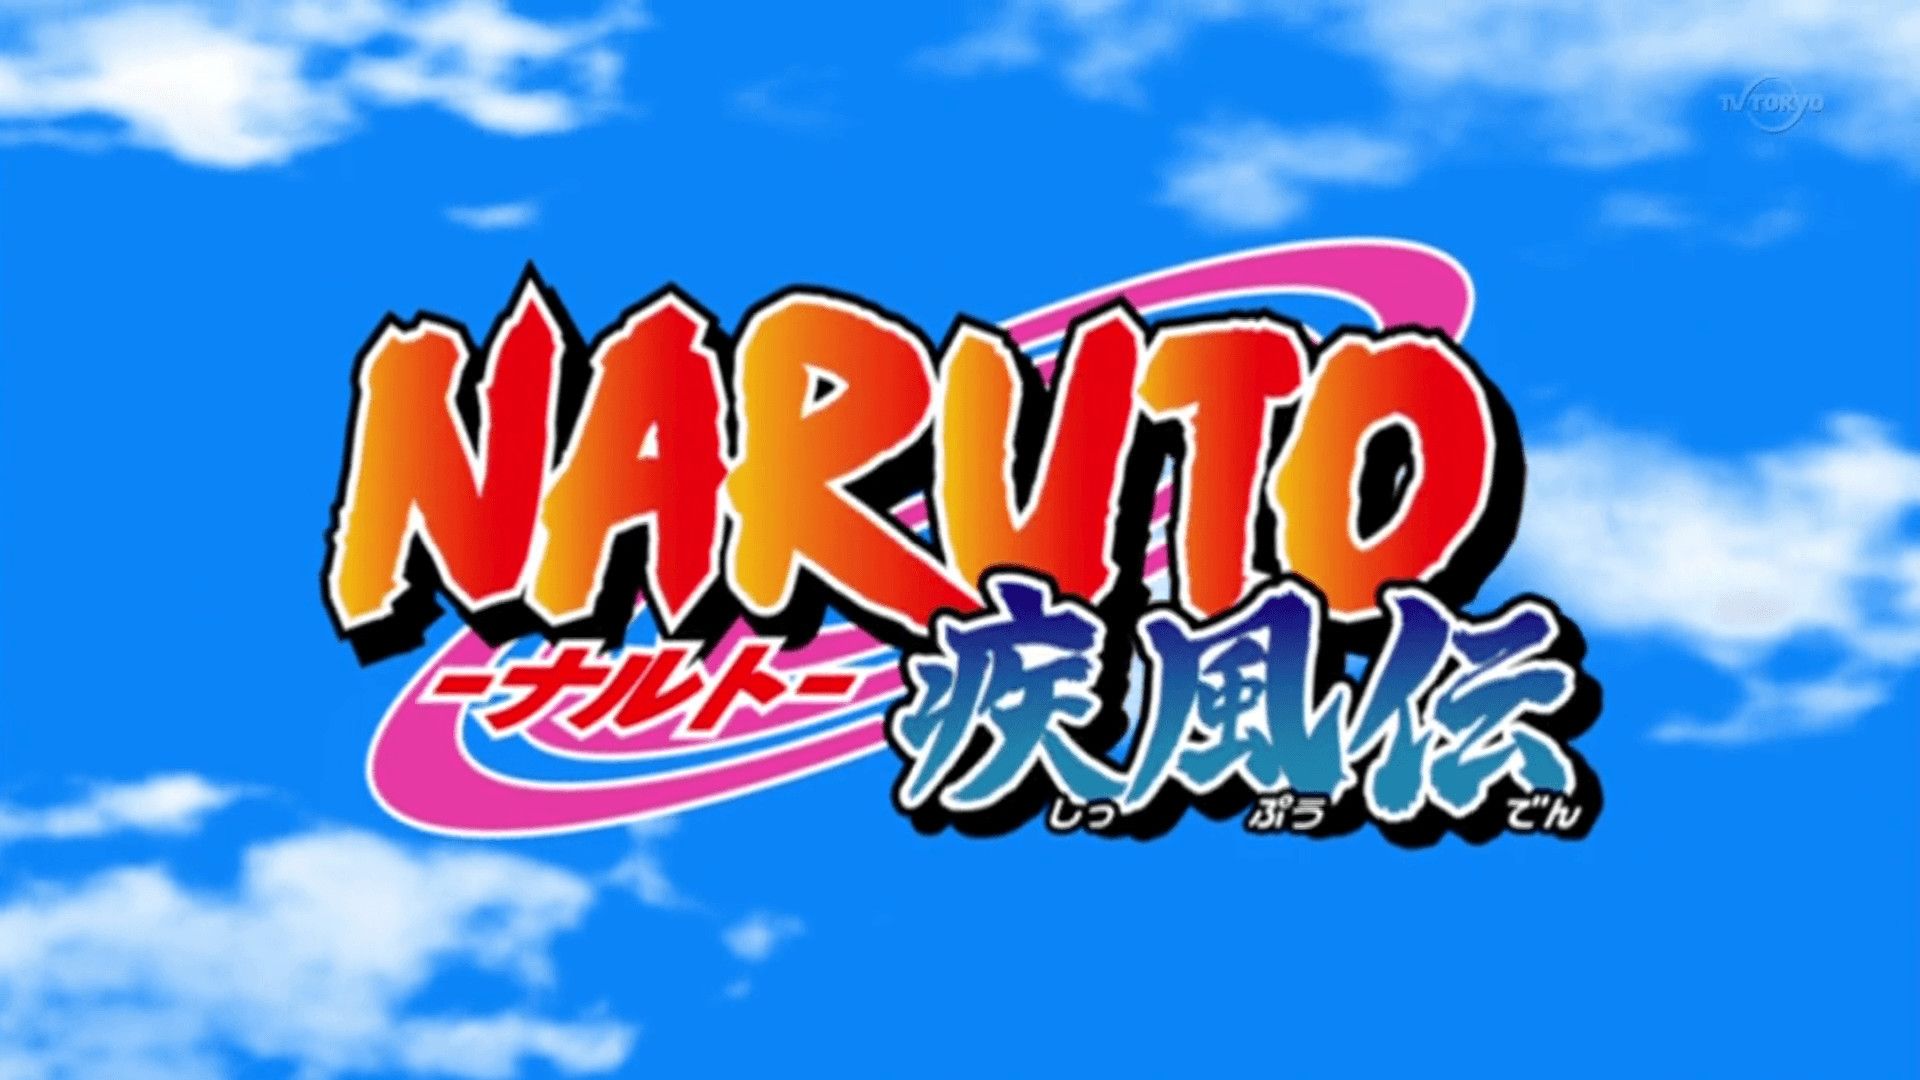 High Quality NARUTO -ナルト- 疾風伝 Logo Blank Meme Template